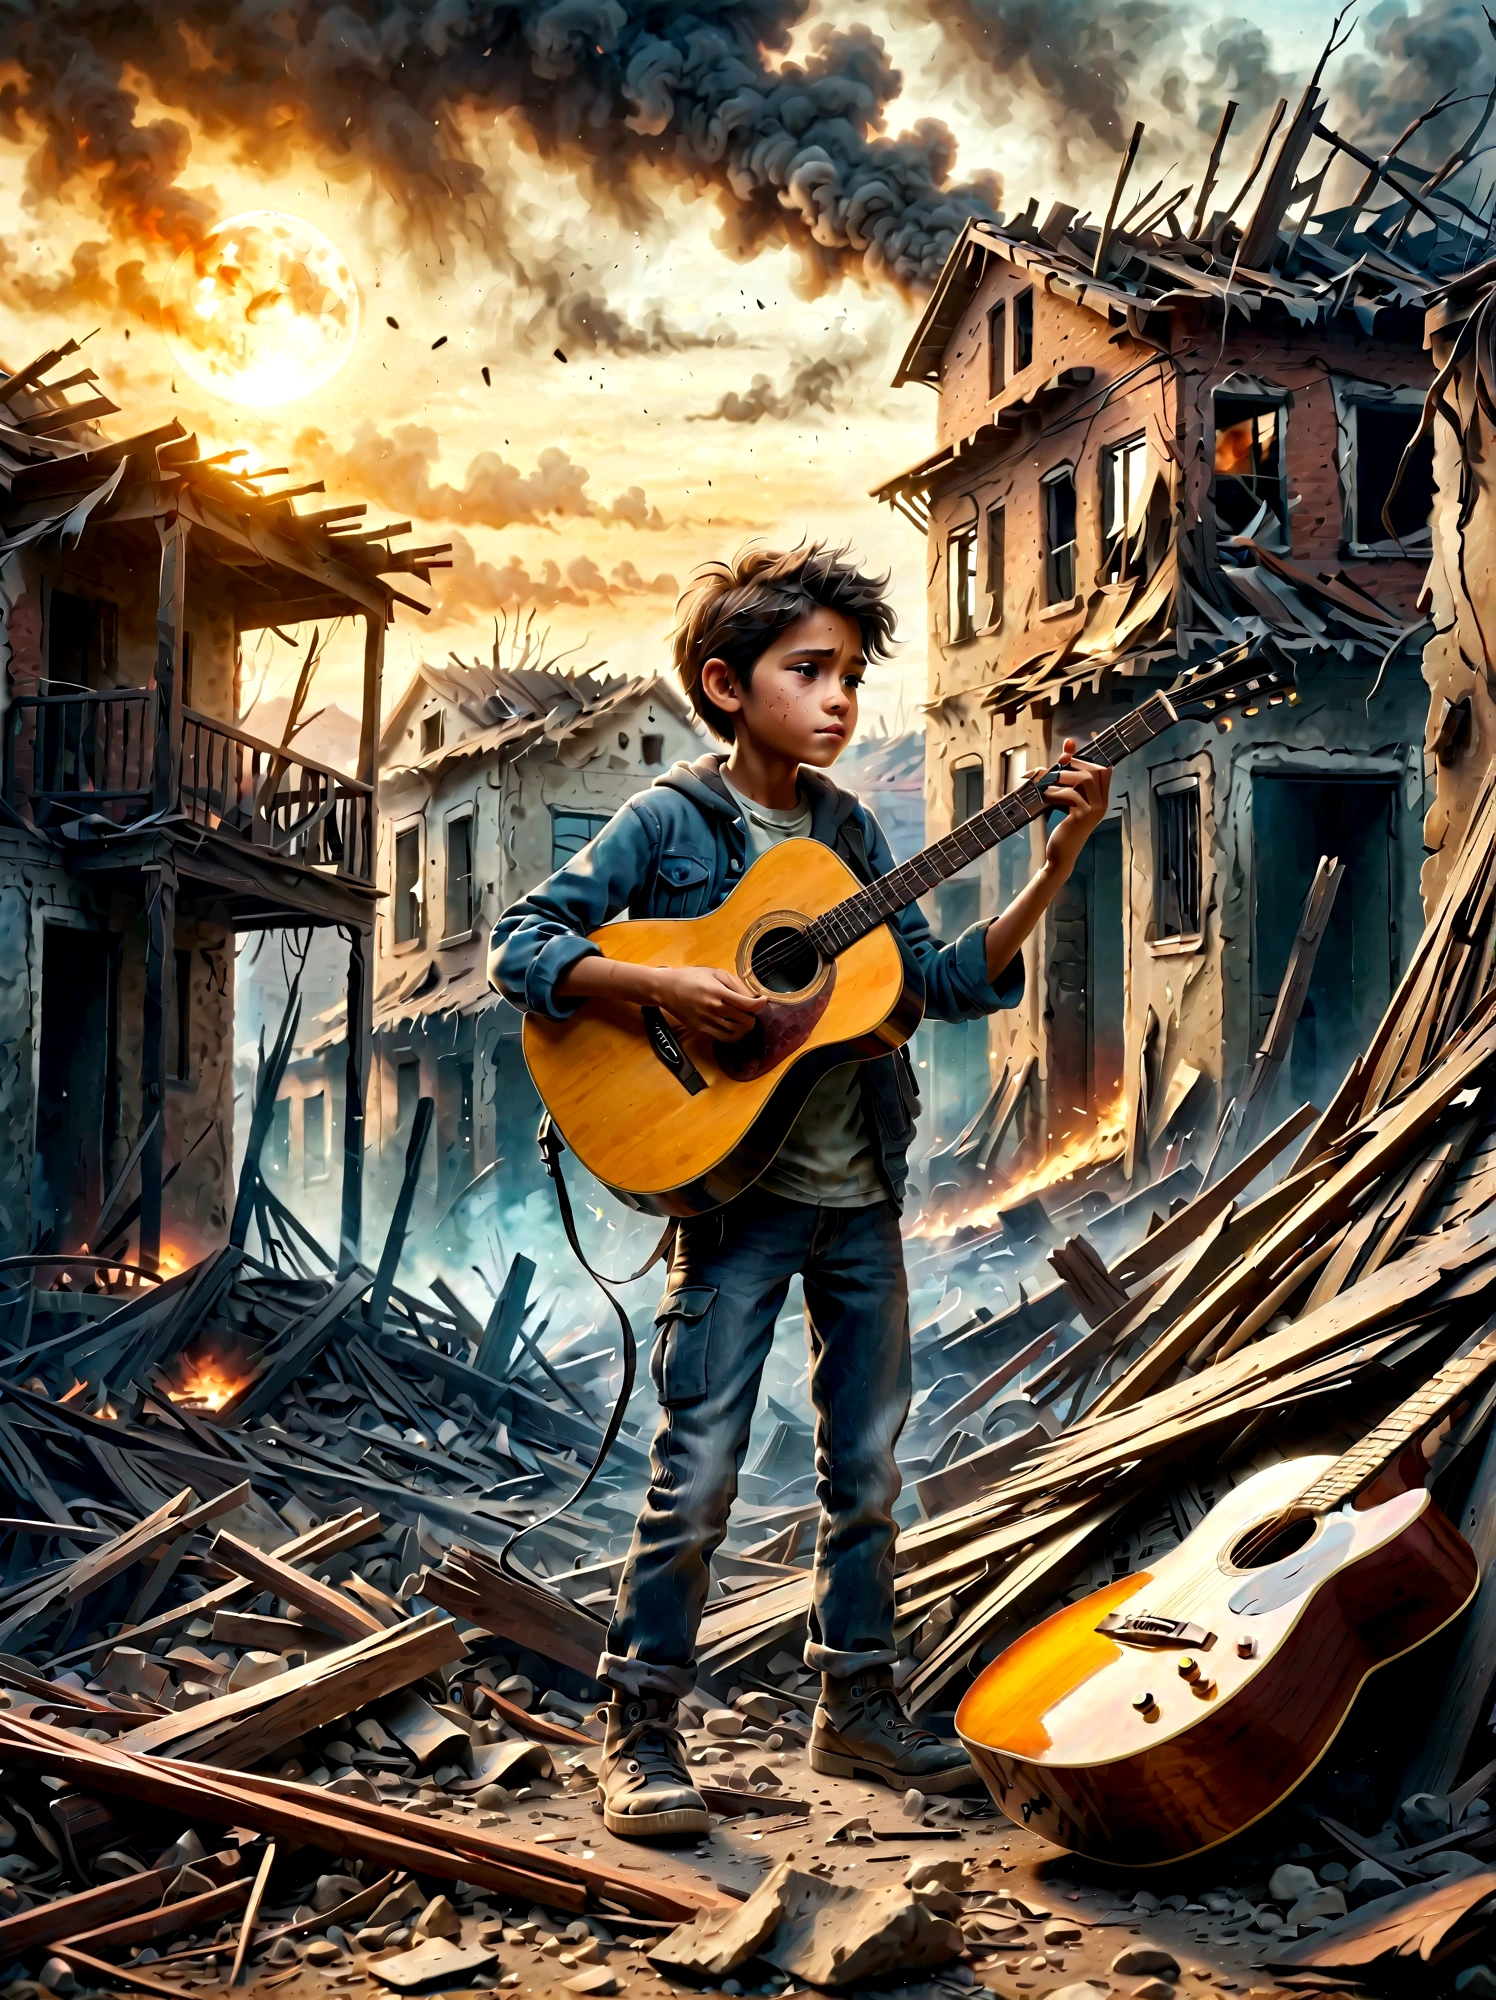 Посреди раздираемой войной, дымные руины, ребенок играет на гитаре. Сцена демонстрирует резкий контраст между опустошением окружающей среды и невинностью людей. . Руины заполнены обломками и остатками построек., с дымом и огнем на заднем плане. Выражение лица ребенка мрачное, отражающее суровую реальность ситуации. Общее настроение острое и эмоциональное., с приглушенными цветами и драматическим освещением, чтобы подчеркнуть отчаяние и проблеск надежды, представленные музыкой..